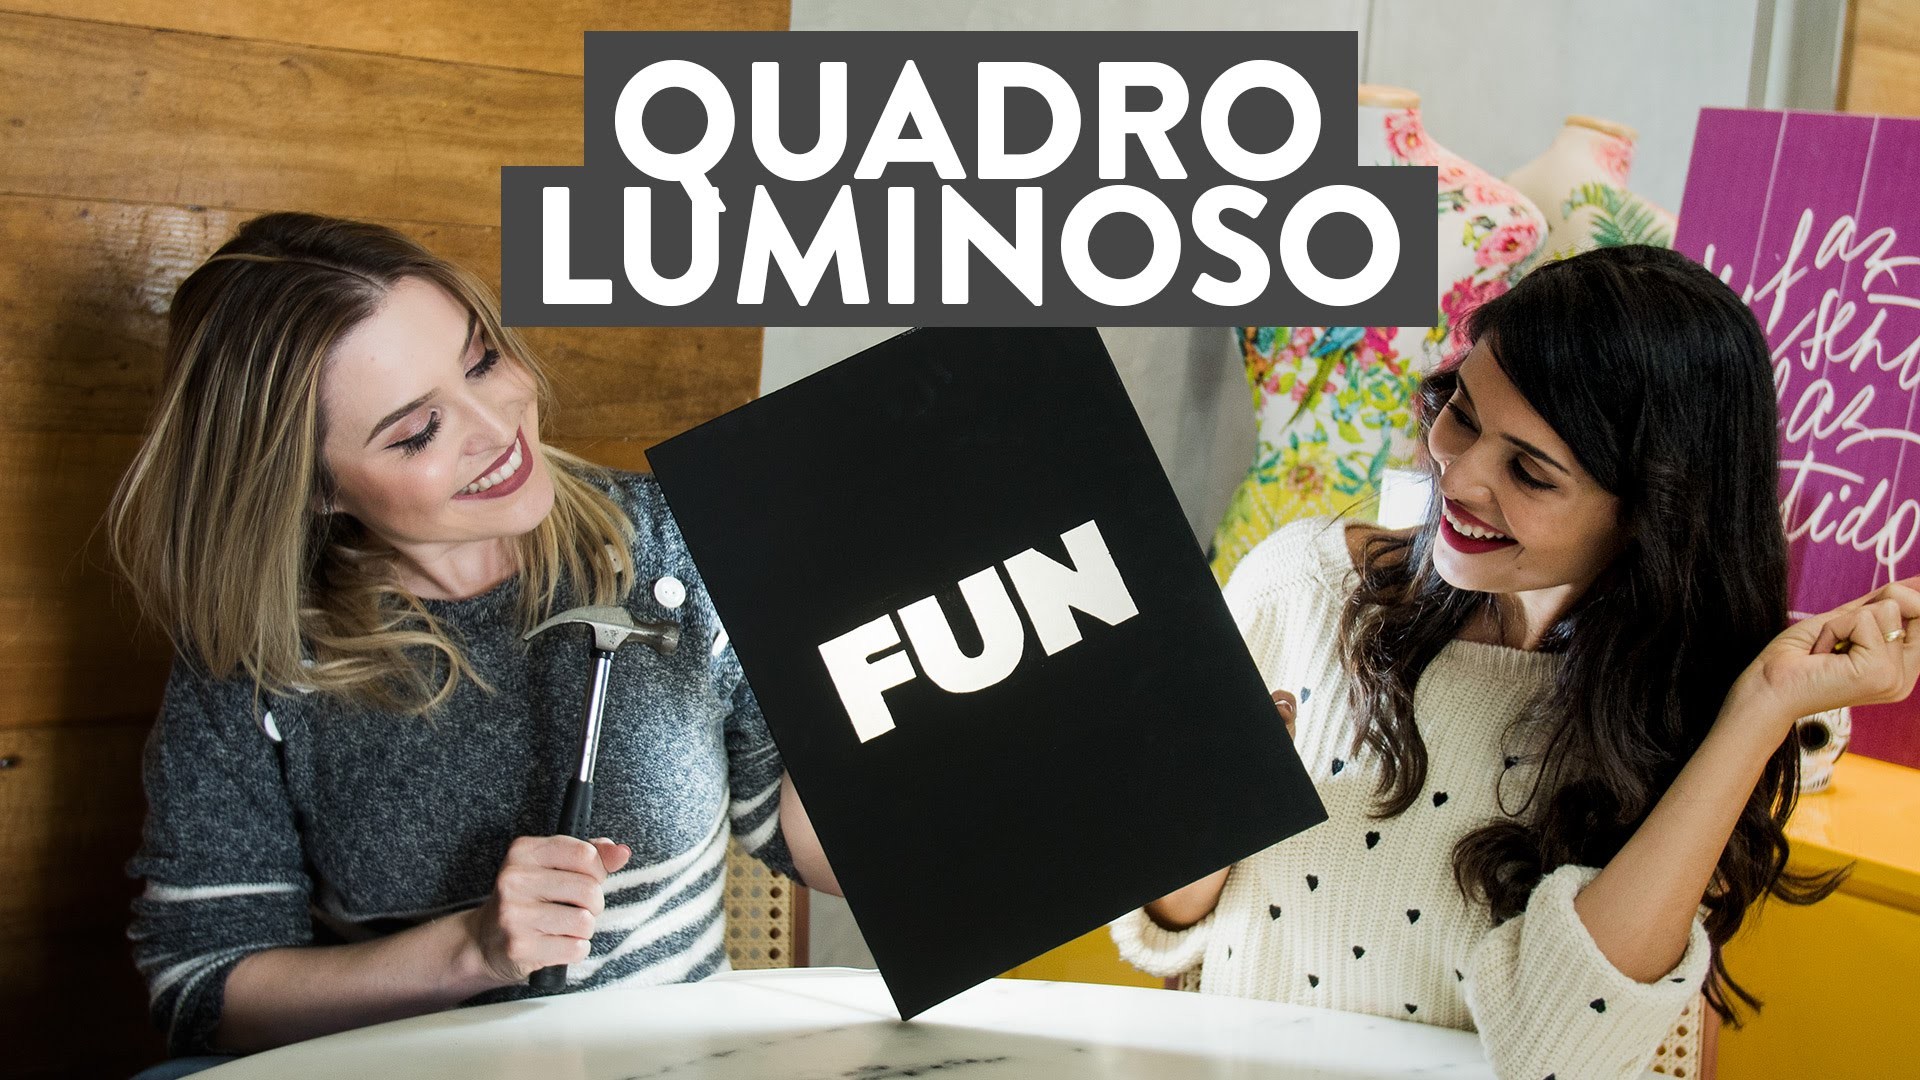 DIY: Quadro Luminoso! | Lu Ferreira